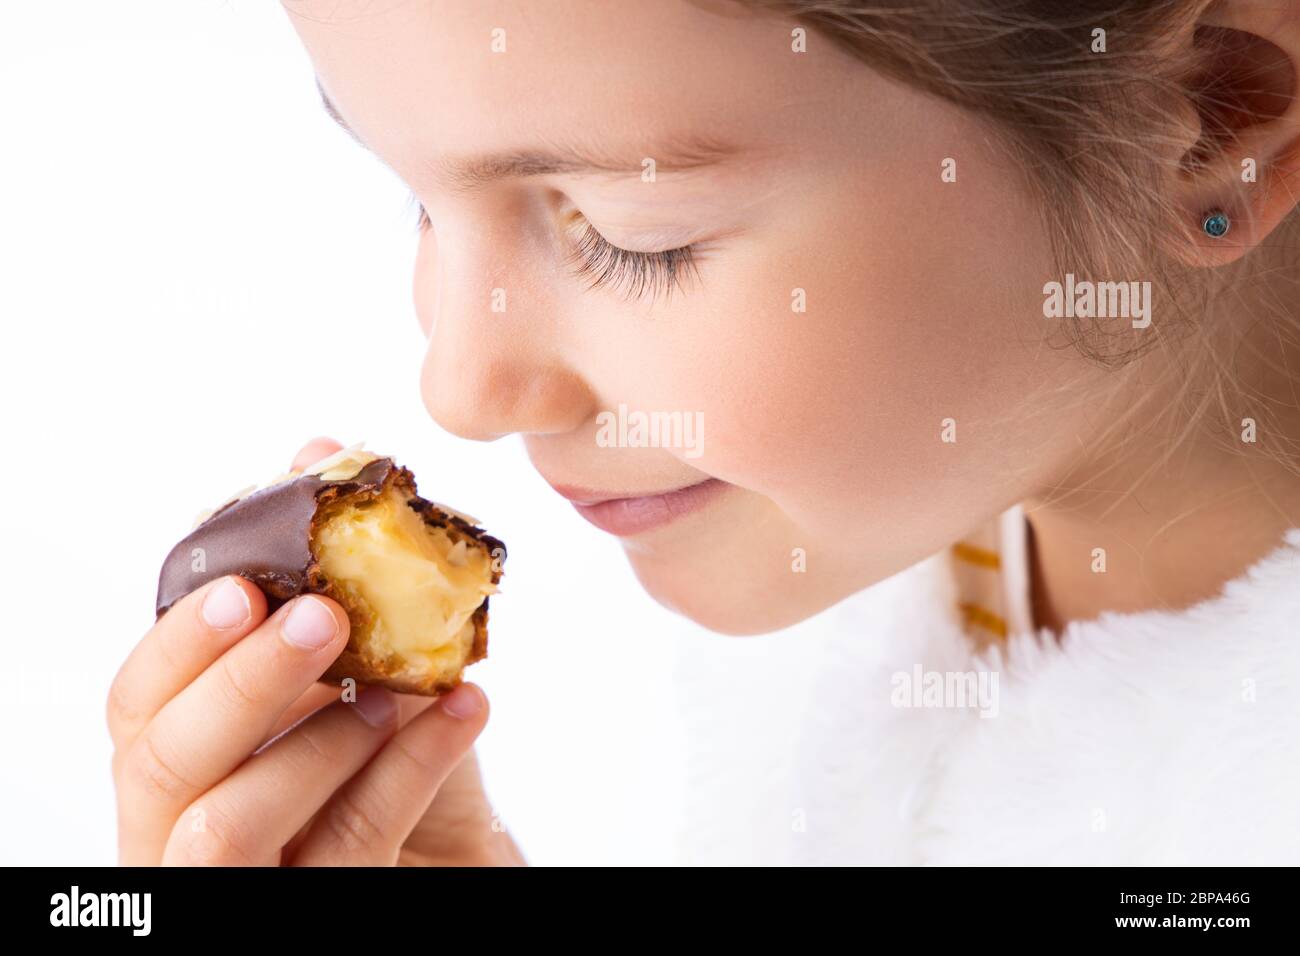 Little girl taste eclair pastry like a pro - smell, bite, eat. Stock Photo